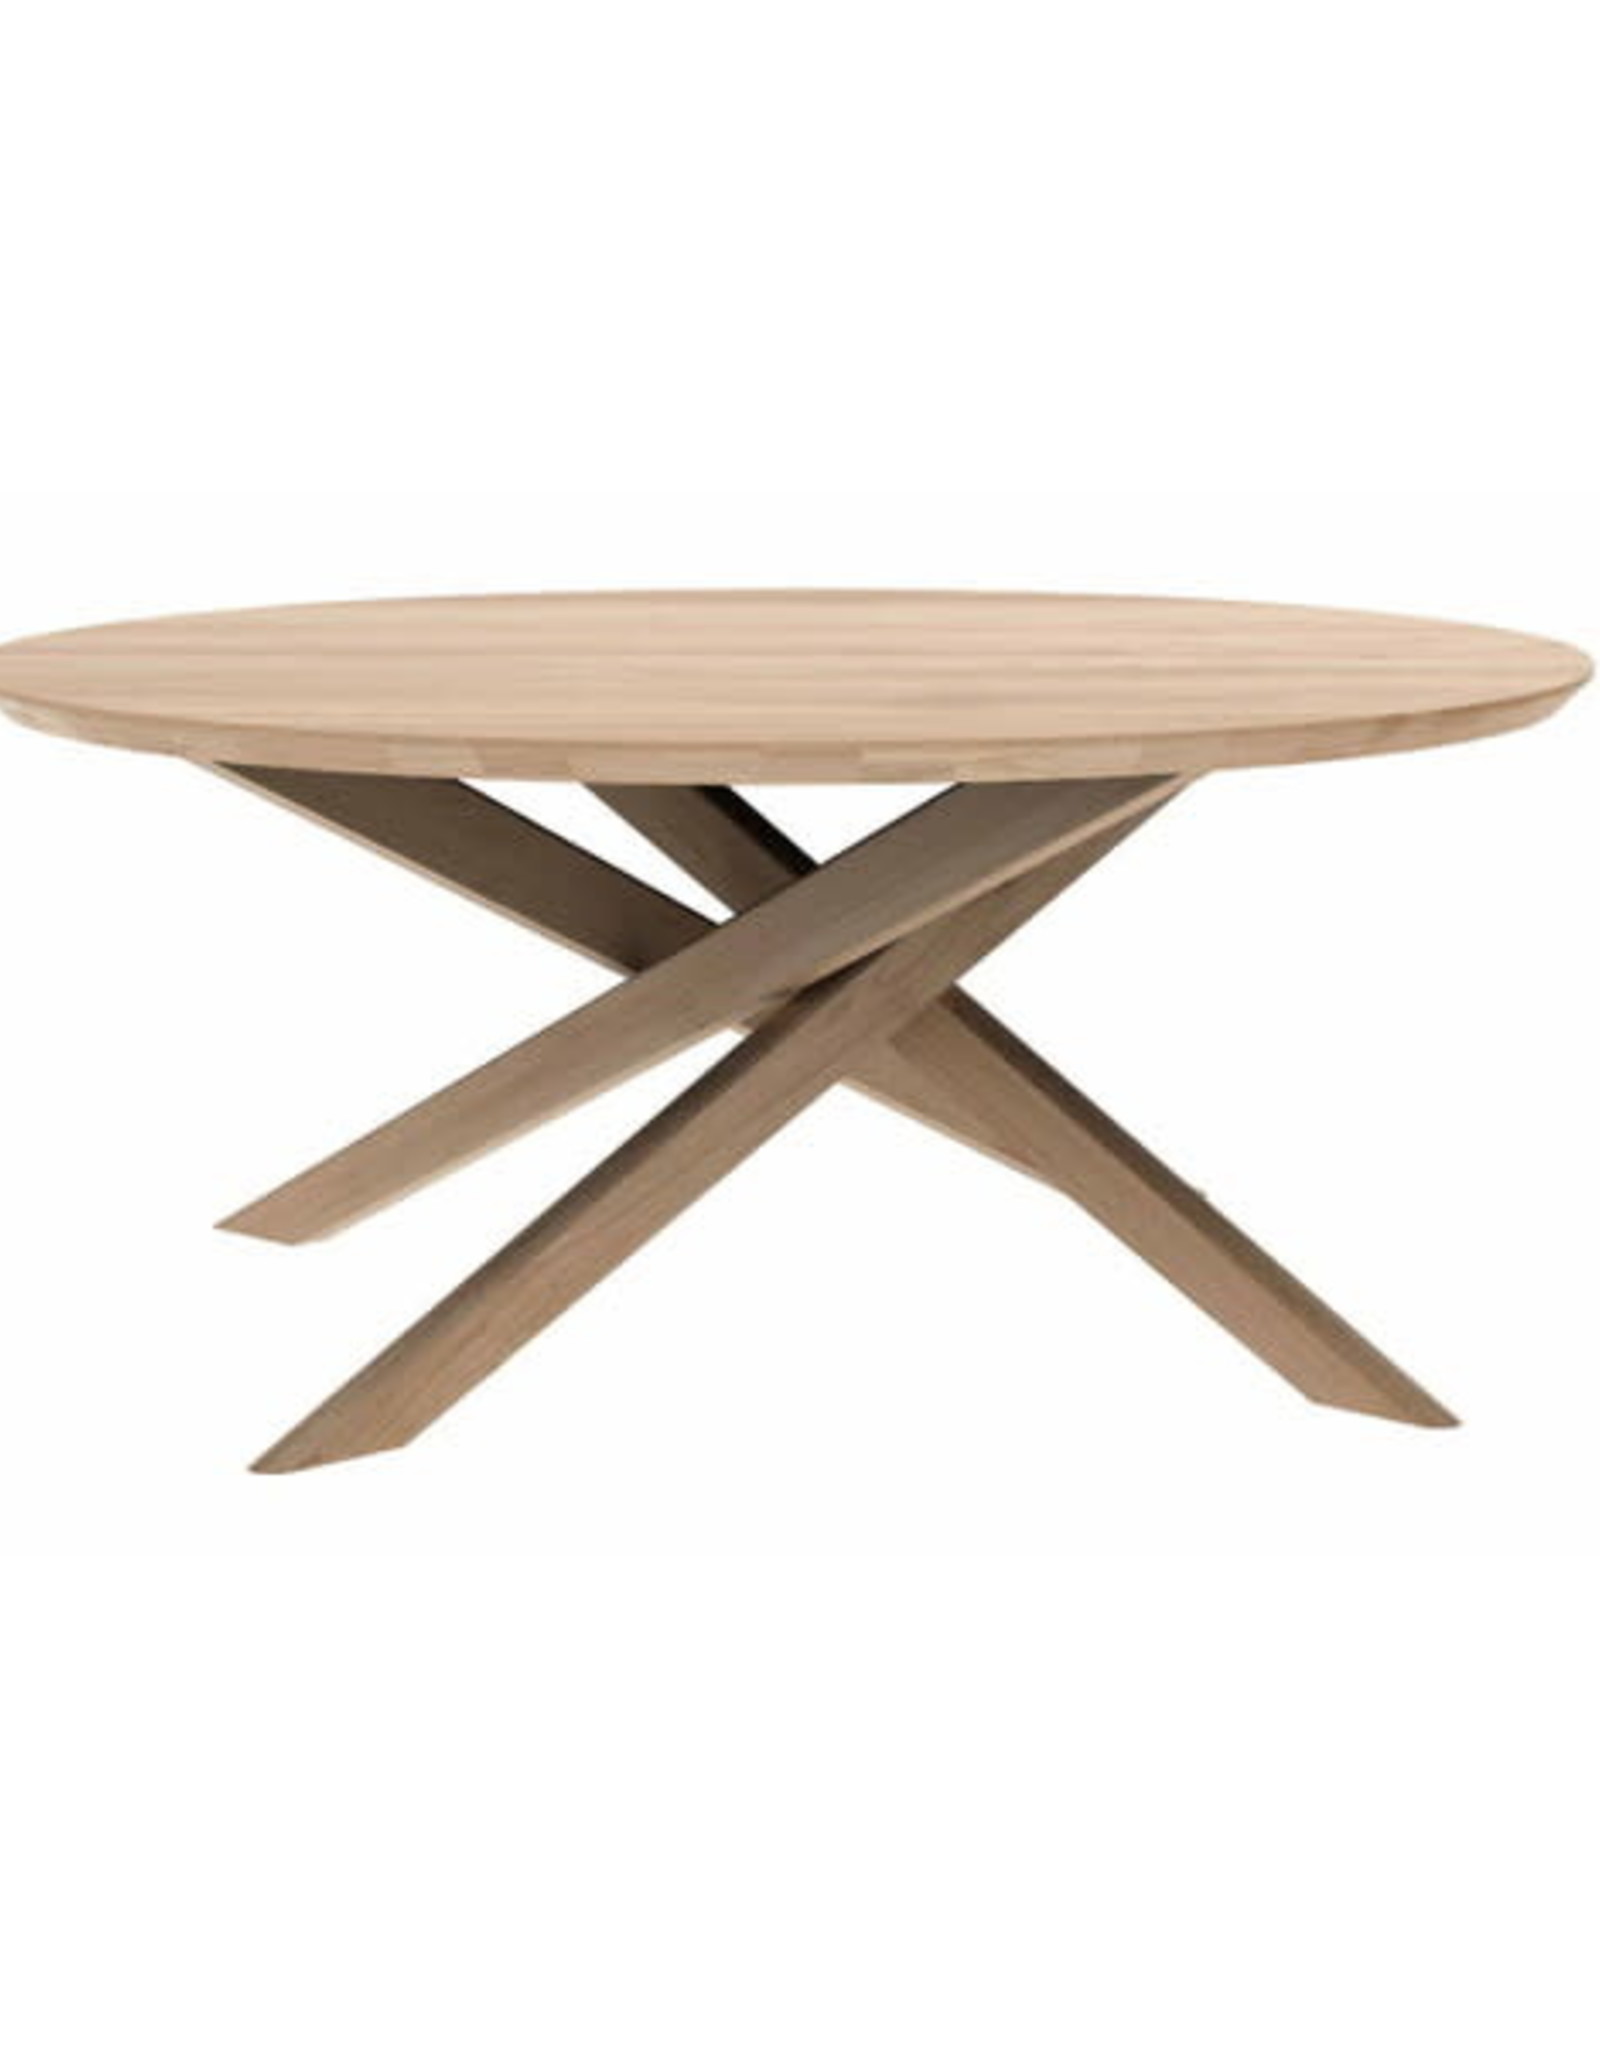 Oak Mikado coffee table - round